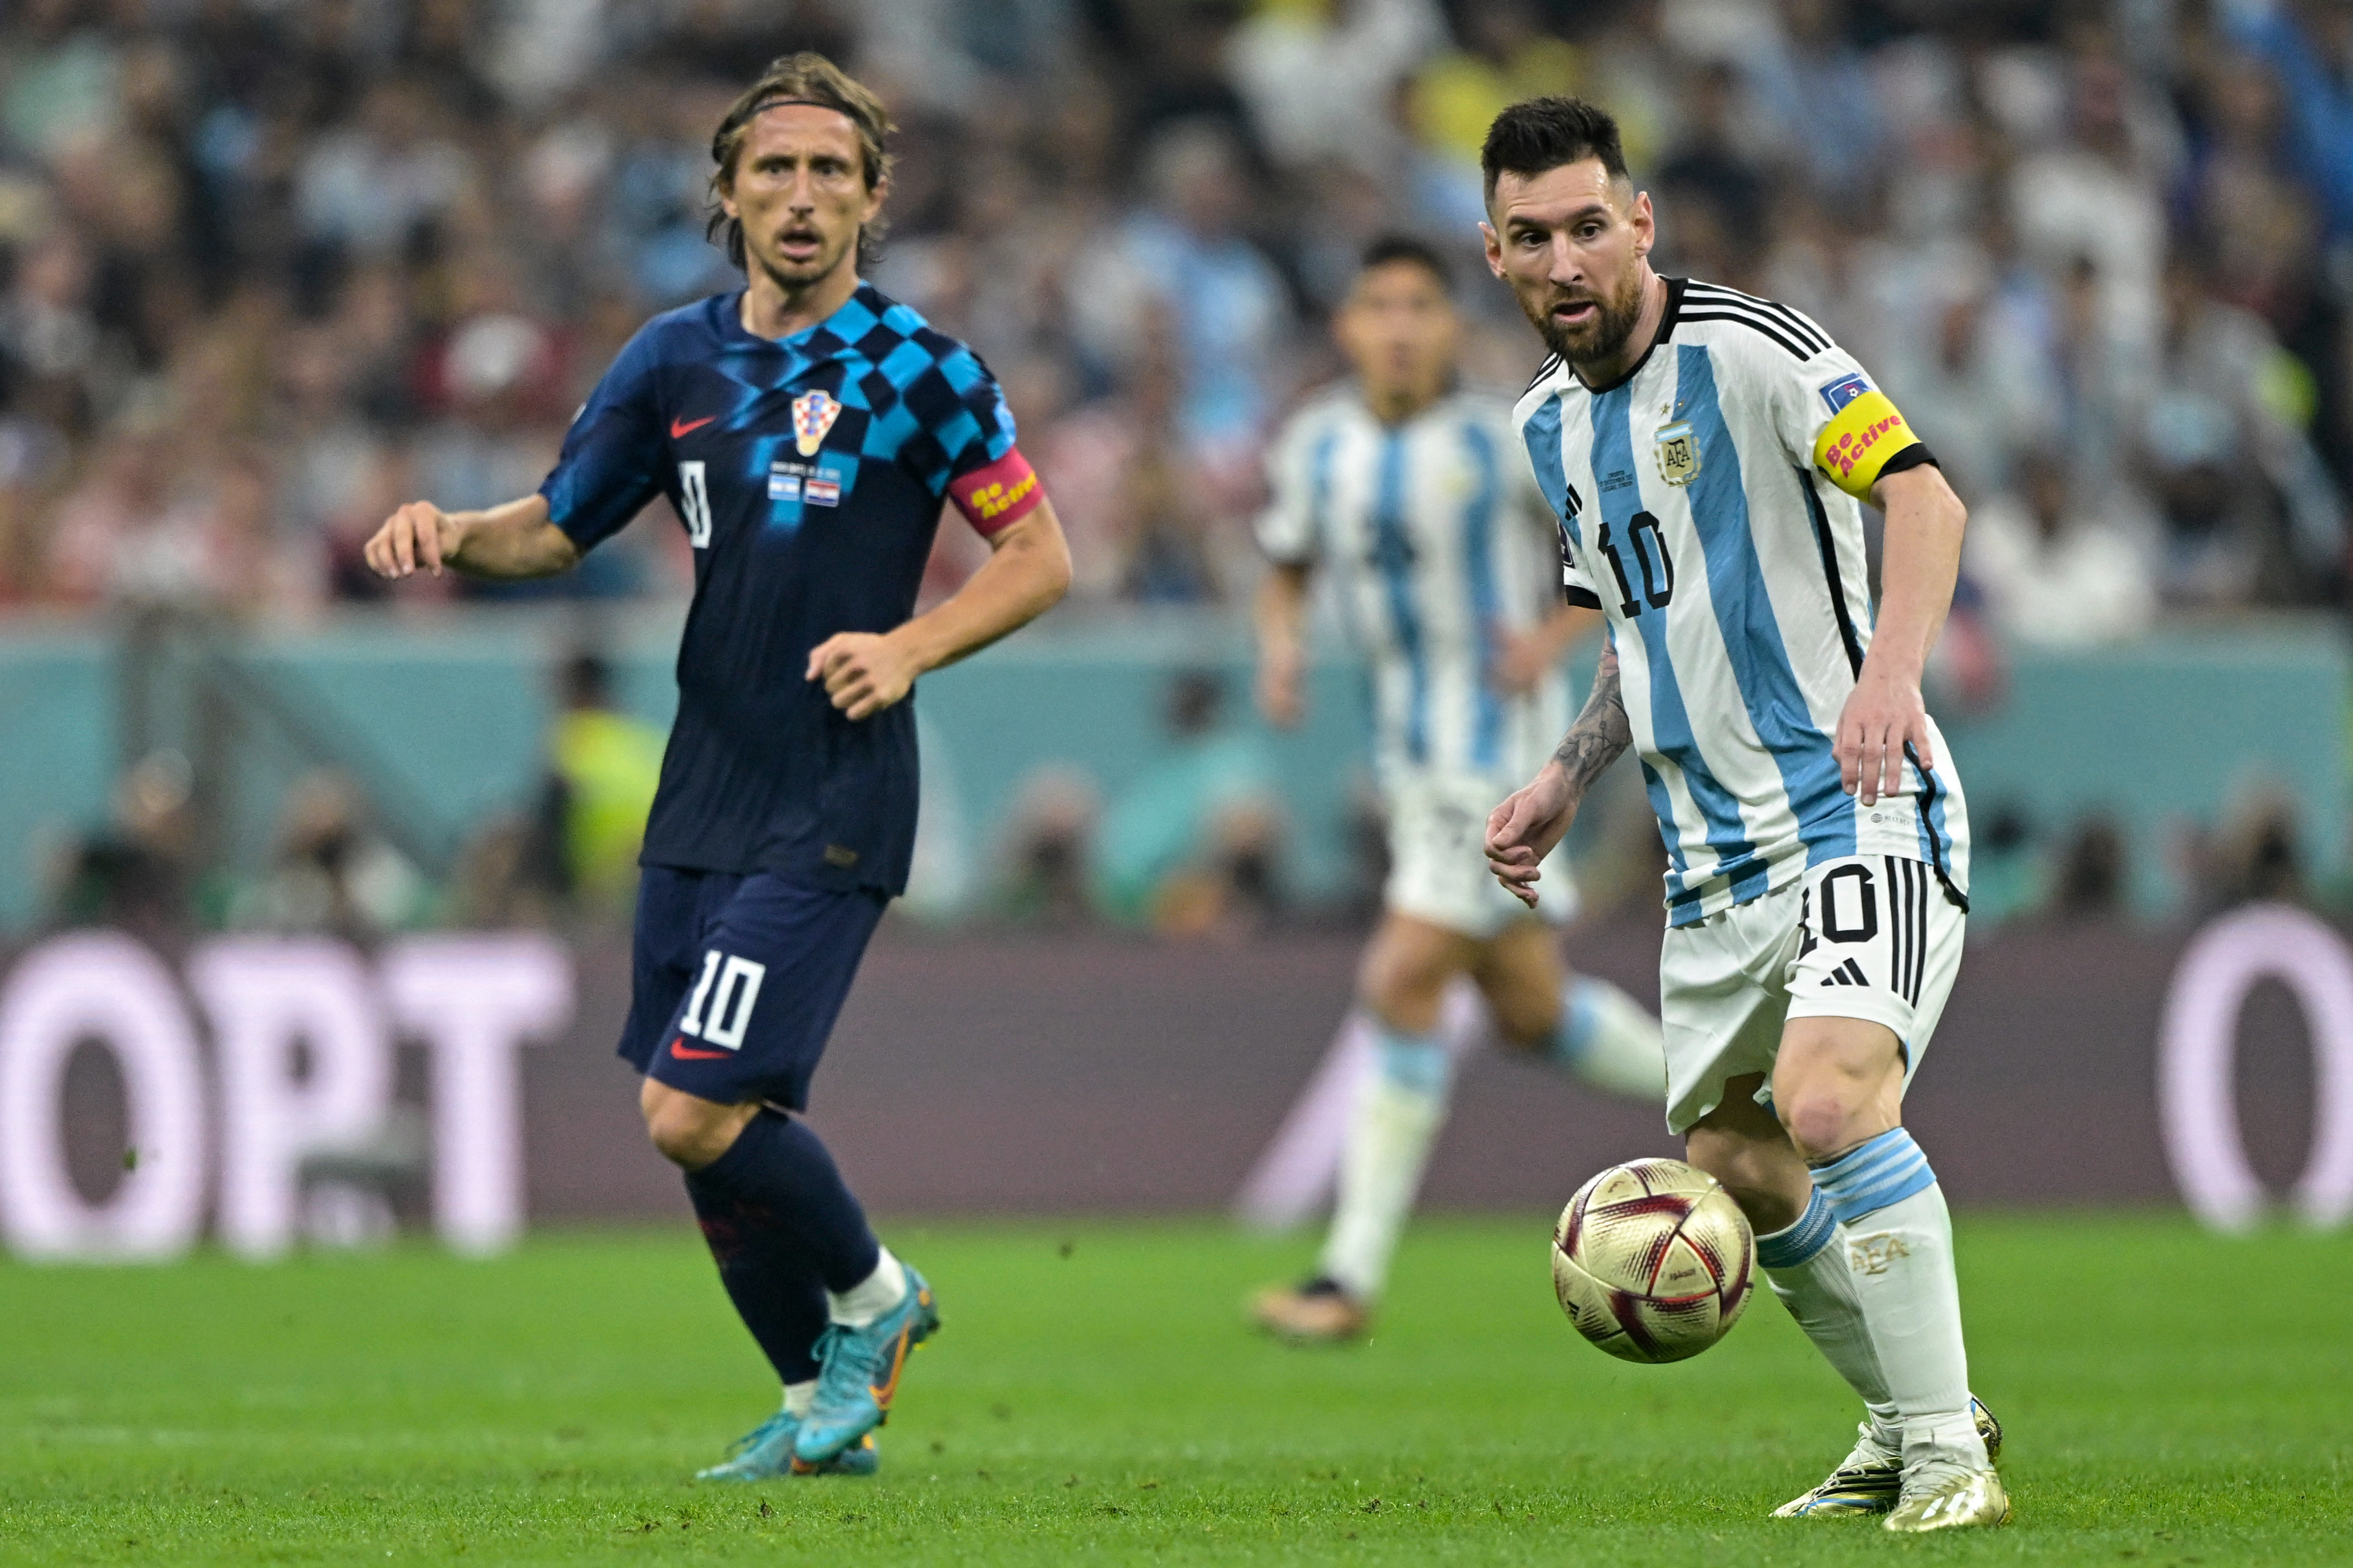 O dono da bola: Messi passeou em campo na despedida de Modric